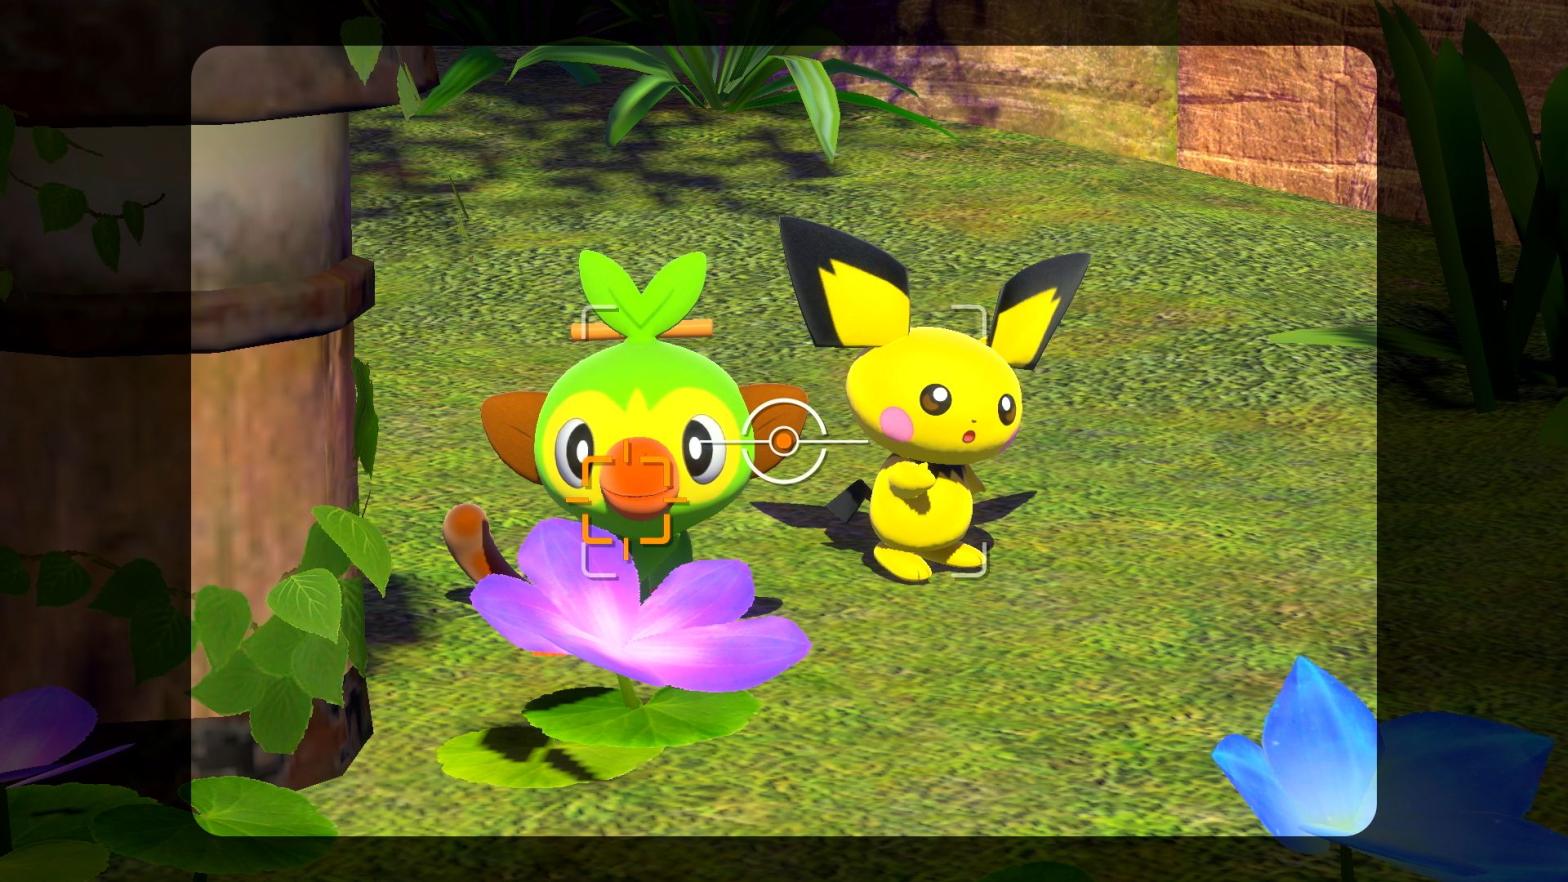 D'awwww (Screenshot: The Pokémon Company)